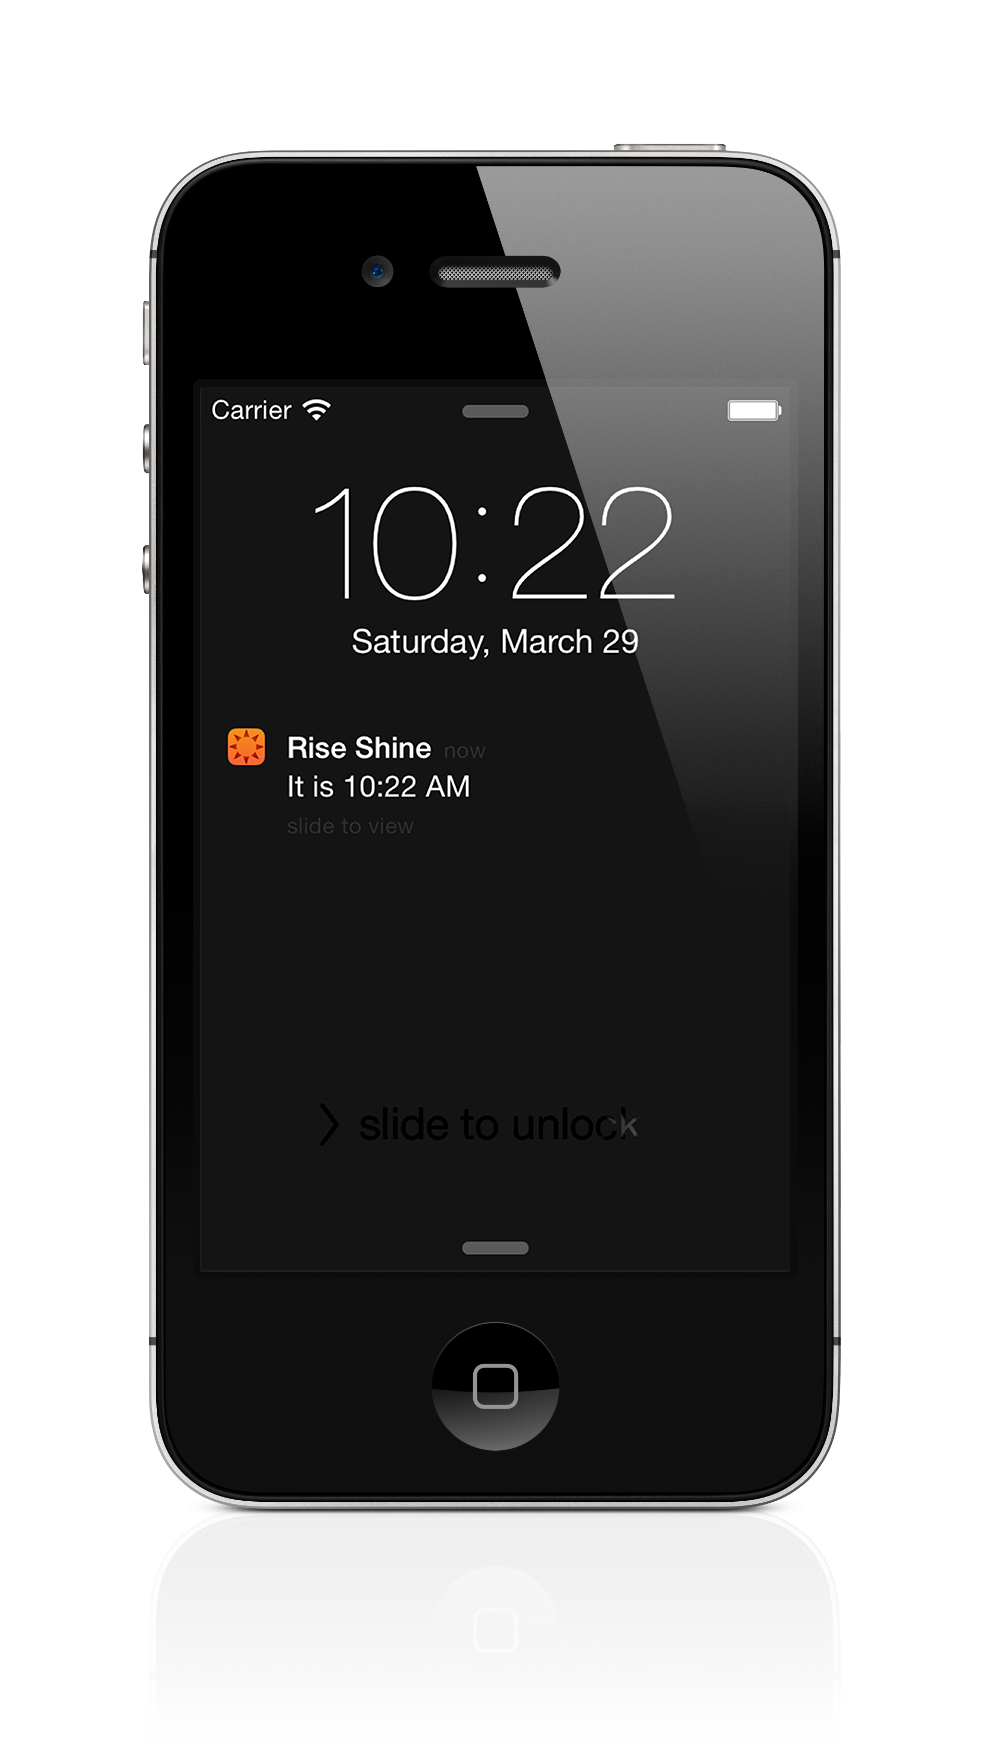 RISE-N-SHINE iPhone Screenshot 4 of 4